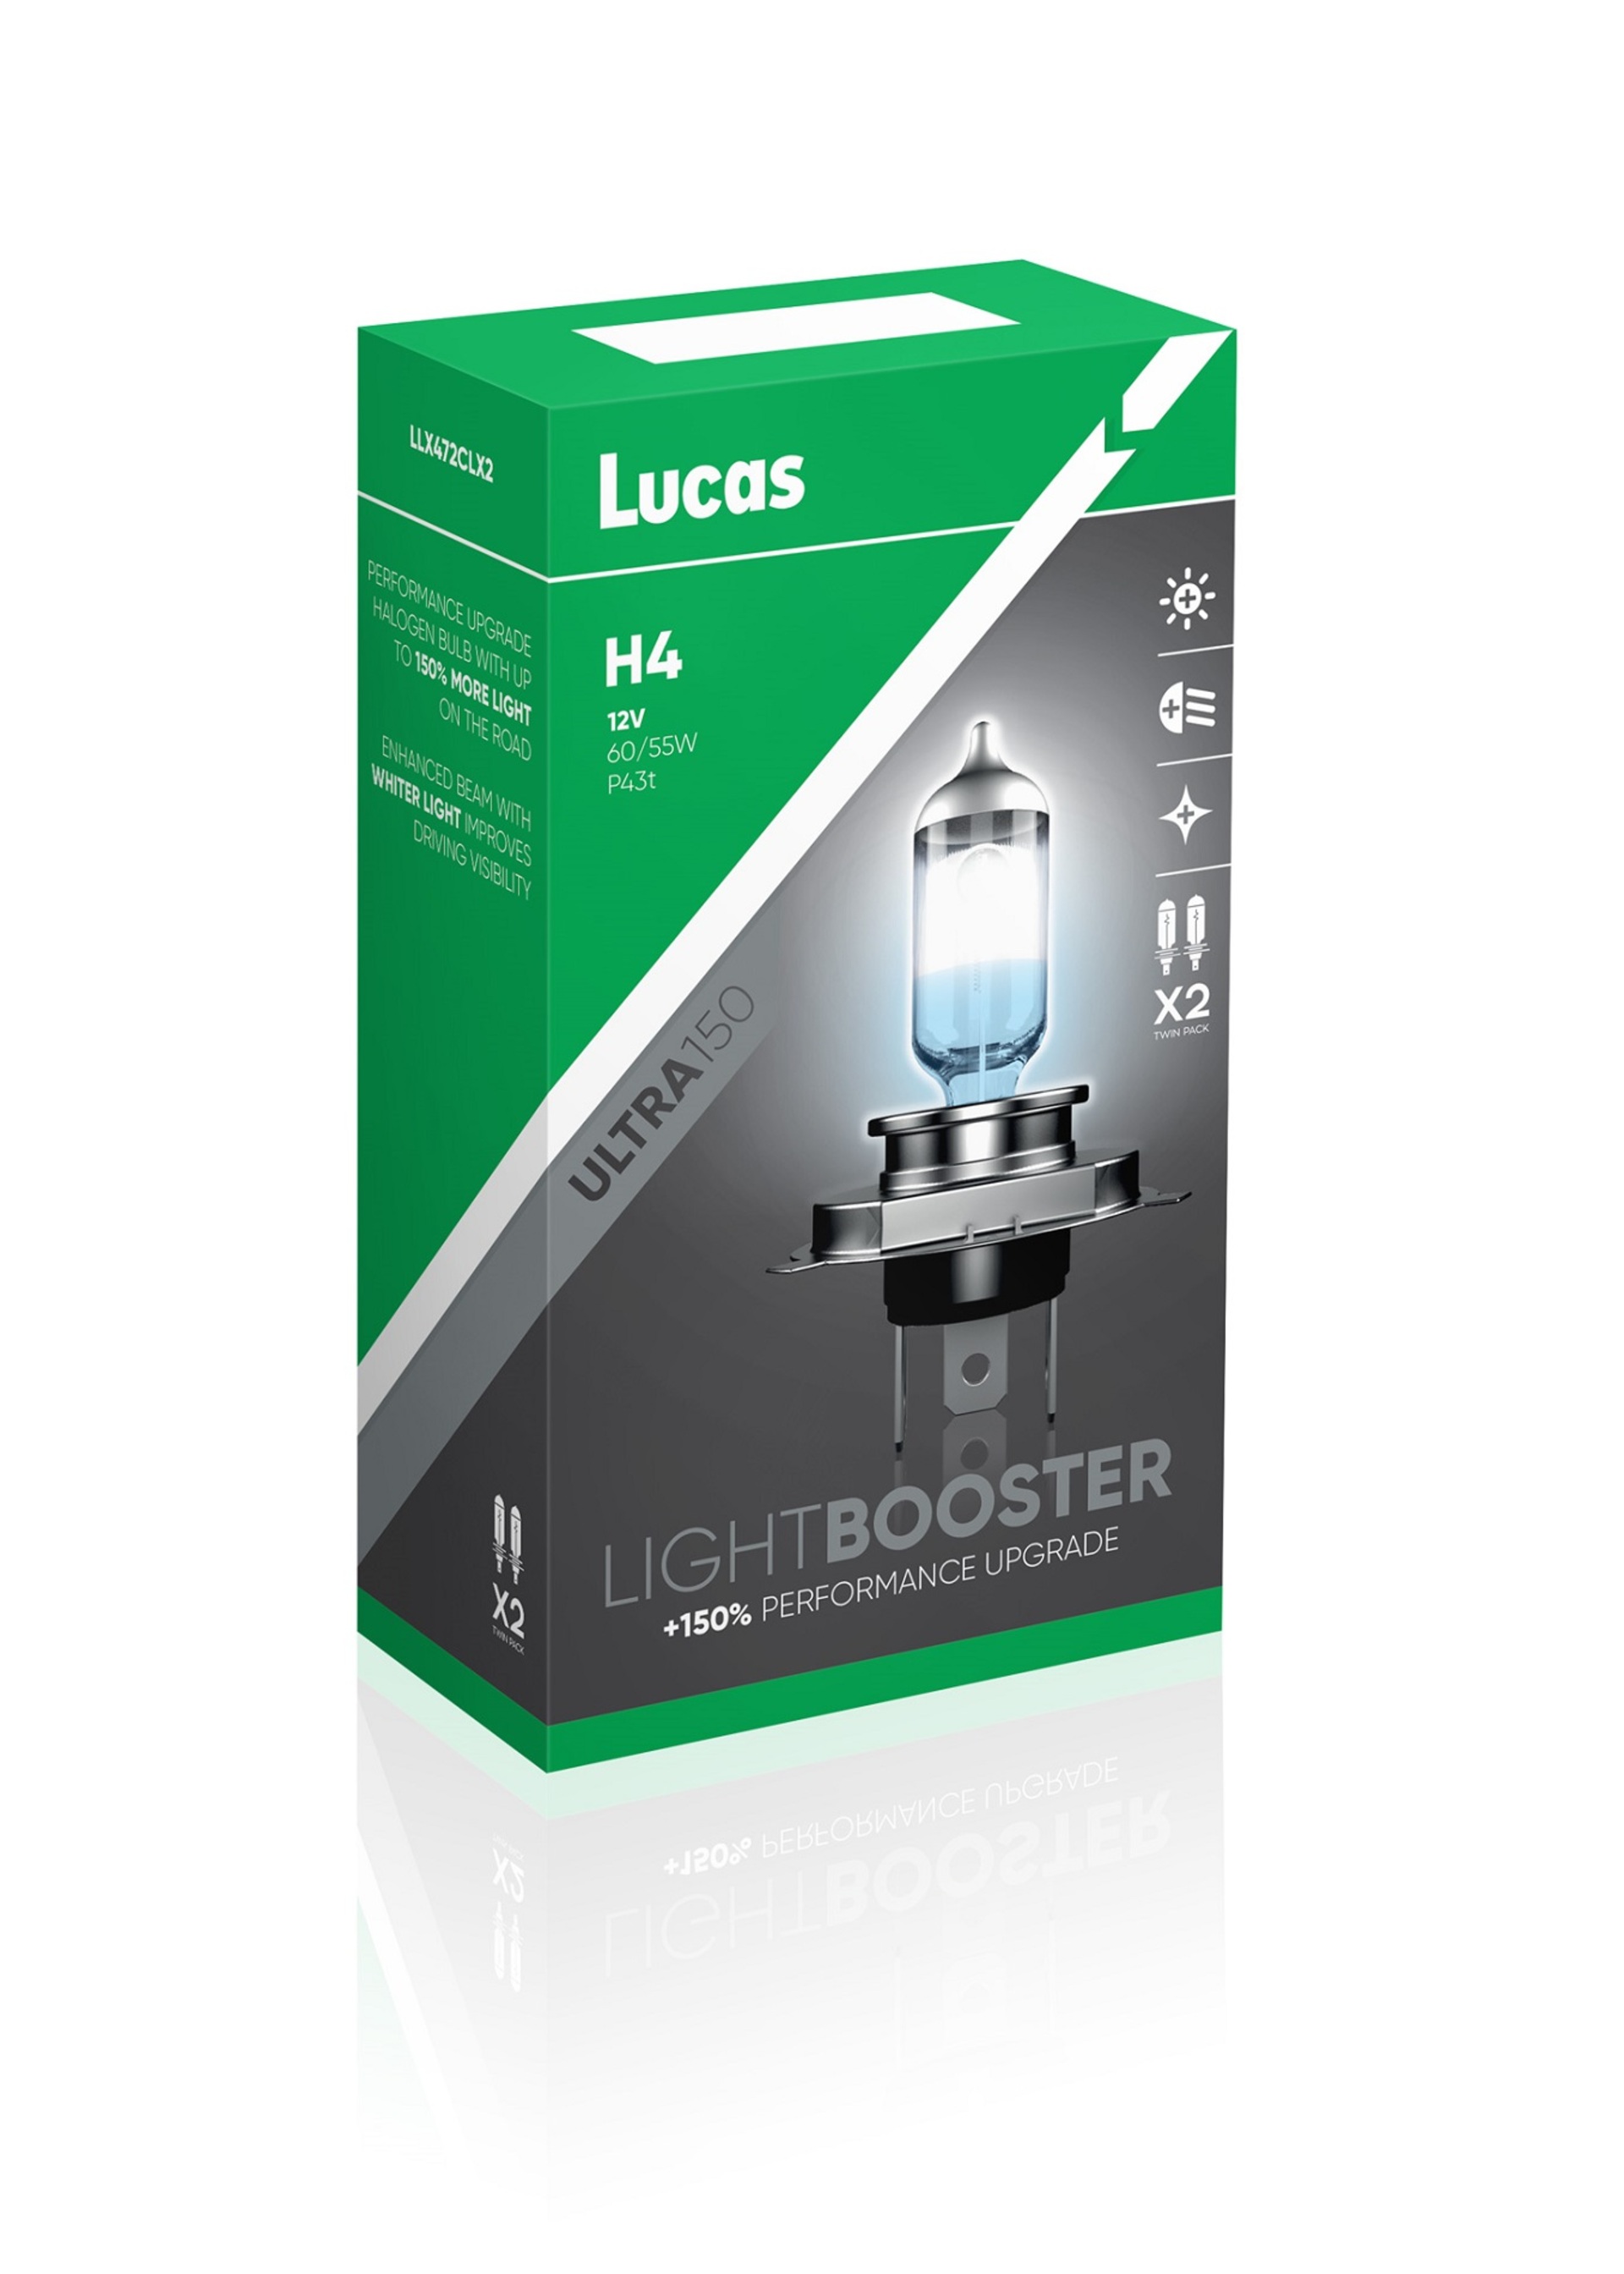 Lucas H4 ULTRA150 +150% 60/55W 12V 2ks LLX472CLX2